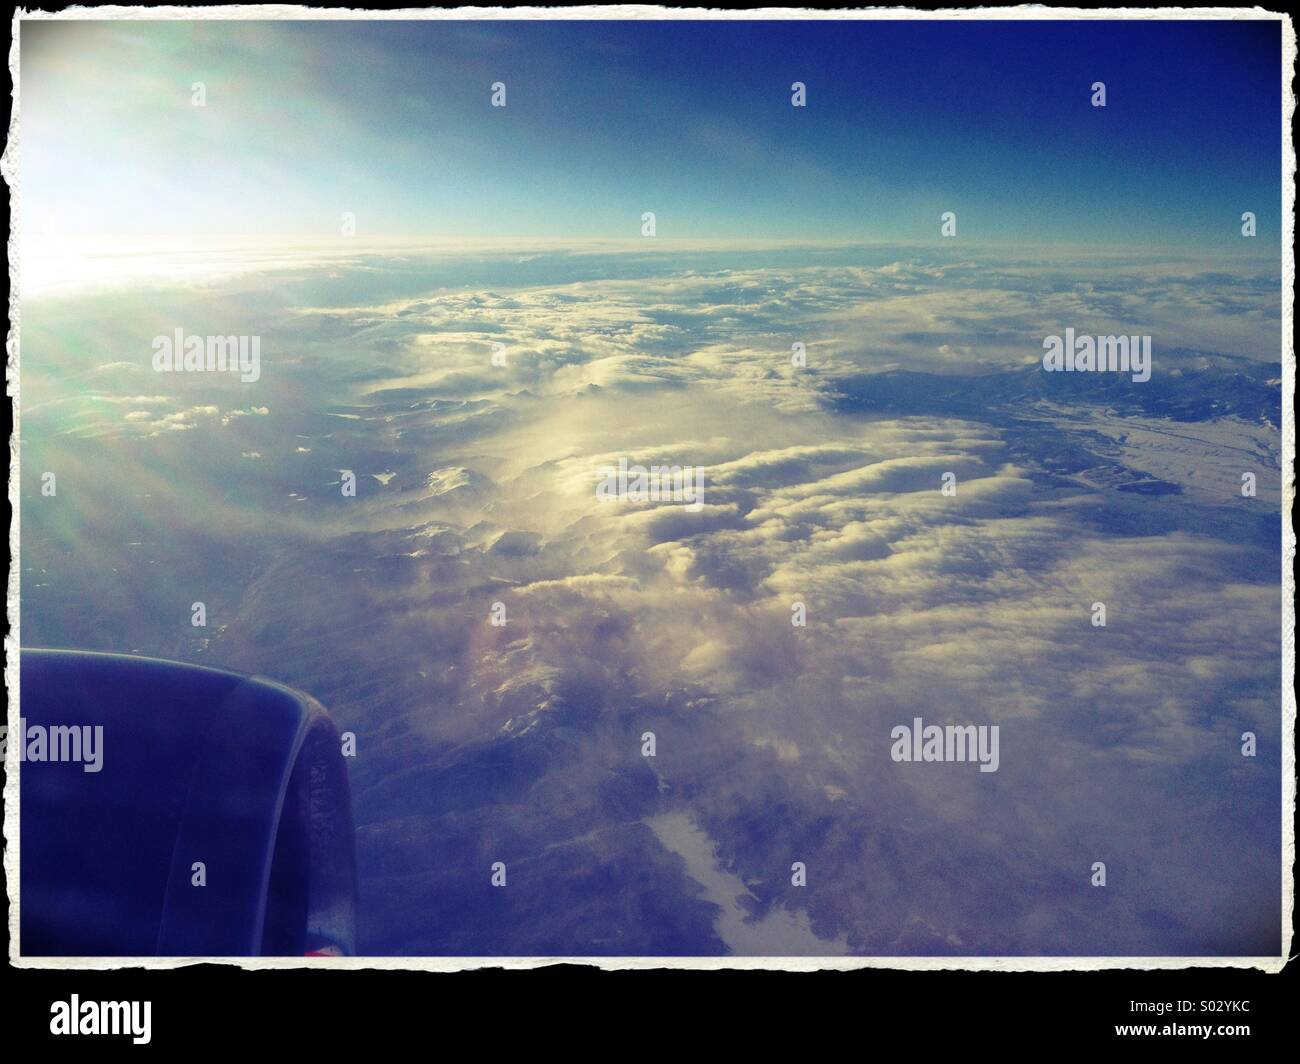 La vista de nubes por debajo, desde la ventana de un avión. Foto de stock